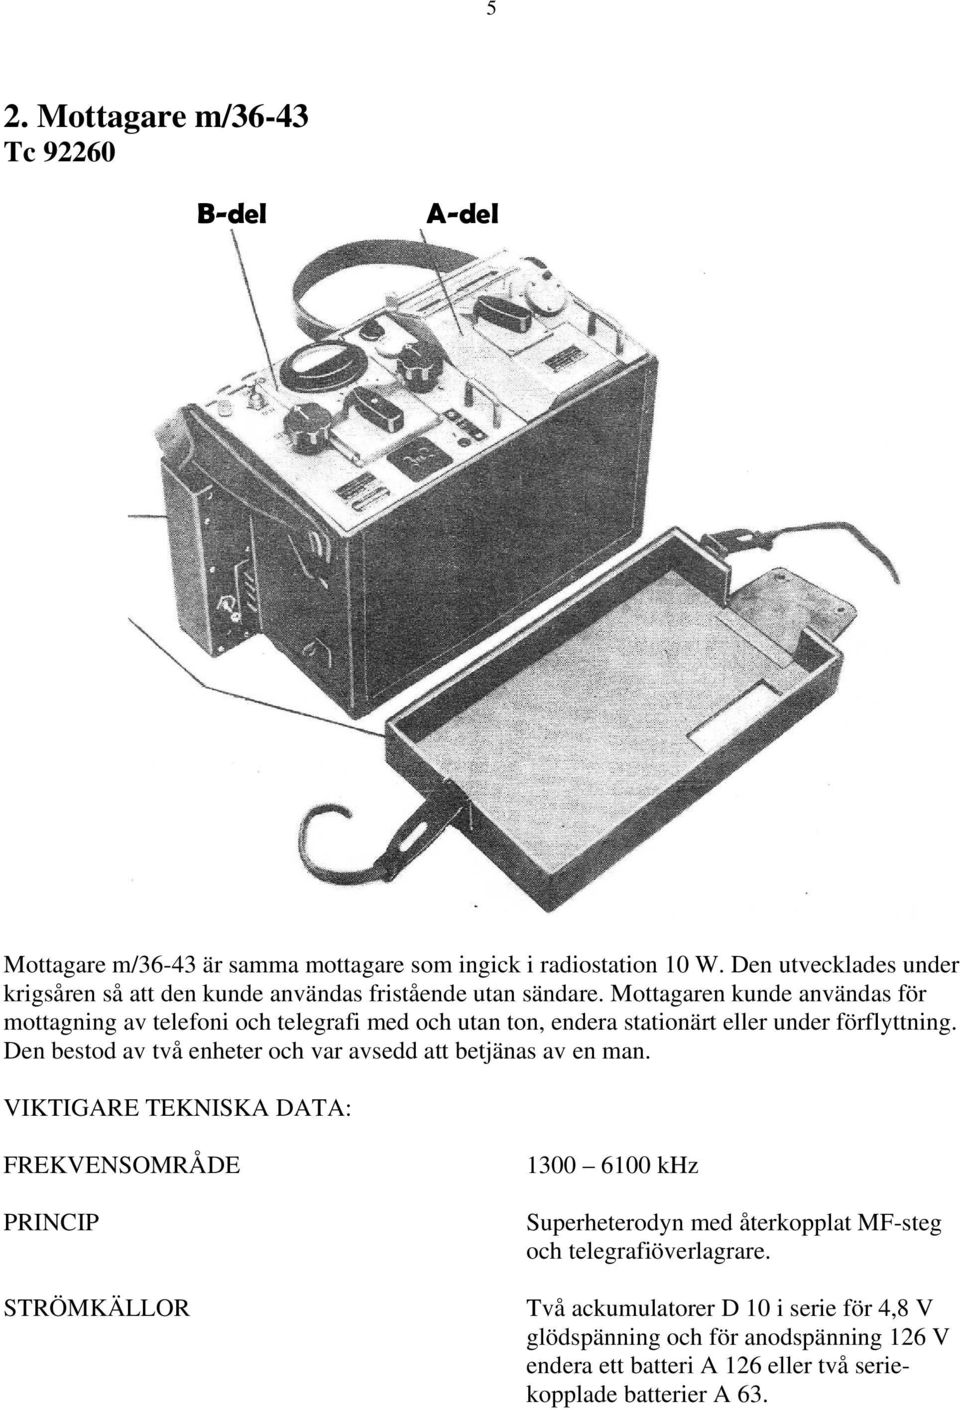 Mottagaren kunde användas för mottagning av telefoni och telegrafi med och utan ton, endera stationärt eller under förflyttning.